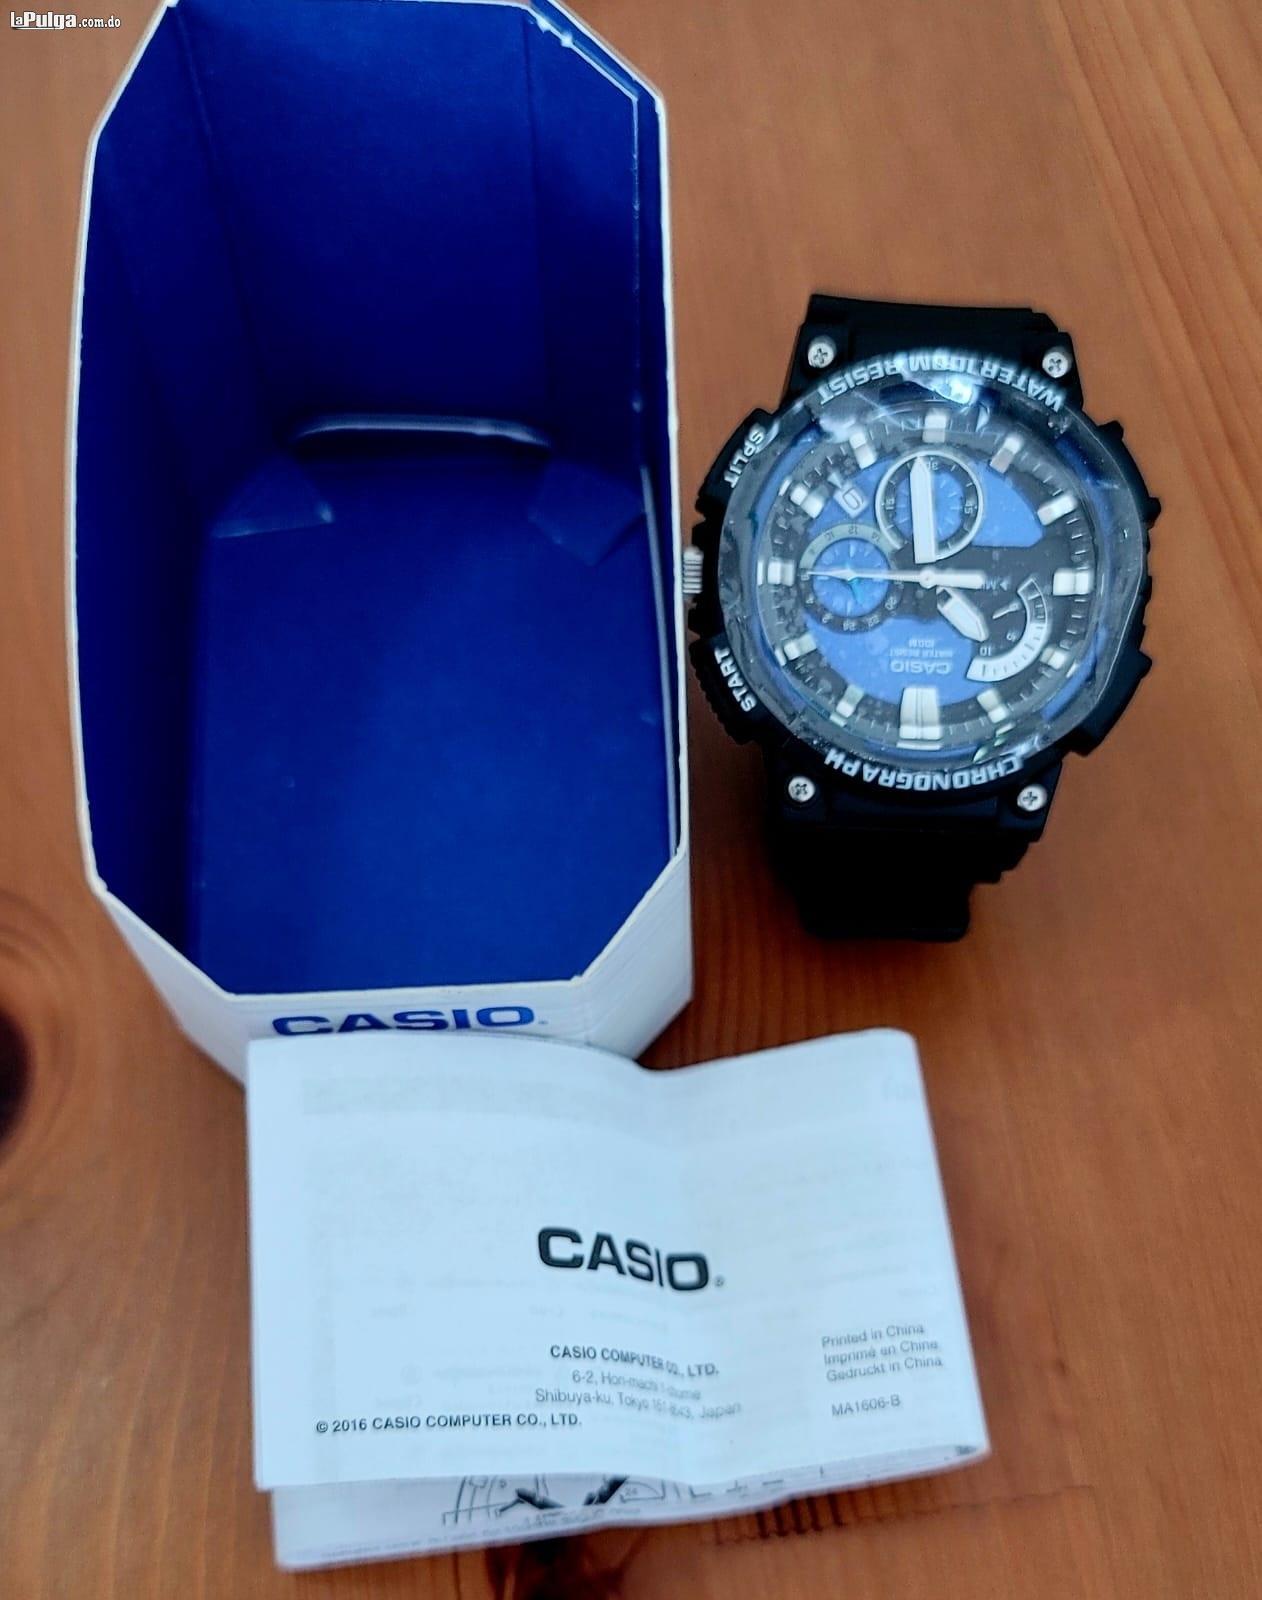 Reloj Casio Nuevo y Autentico Análogo y cronografo. Resistente al agu Foto 7144759-4.jpg